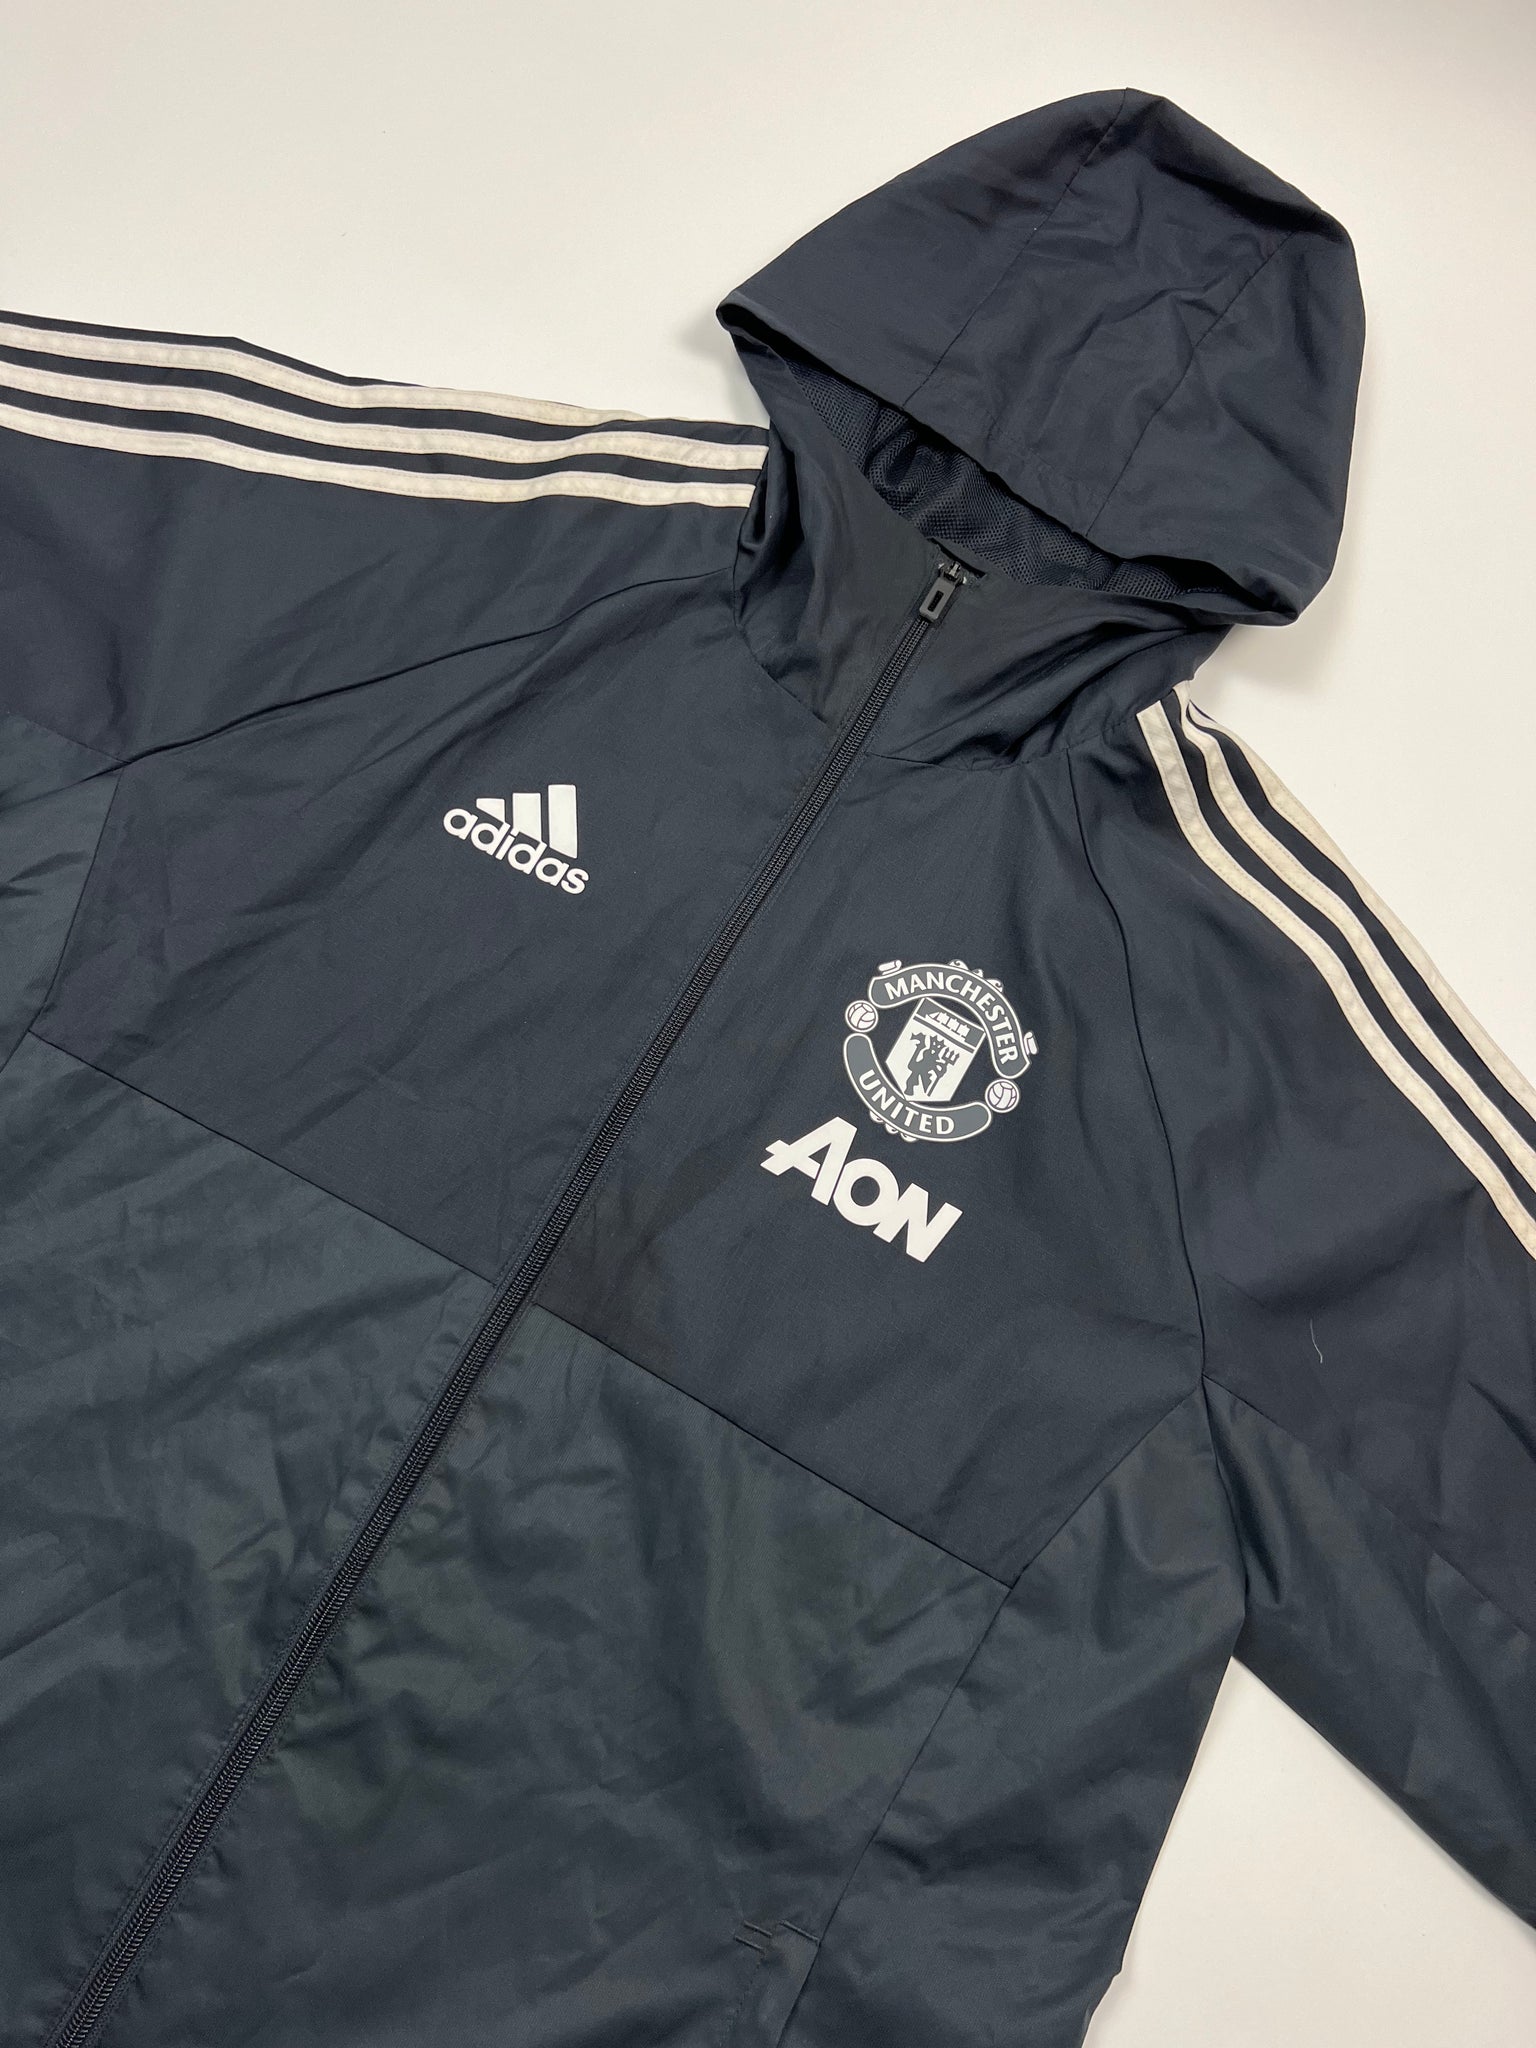 Adidas Manchester United Track Jacket (M)